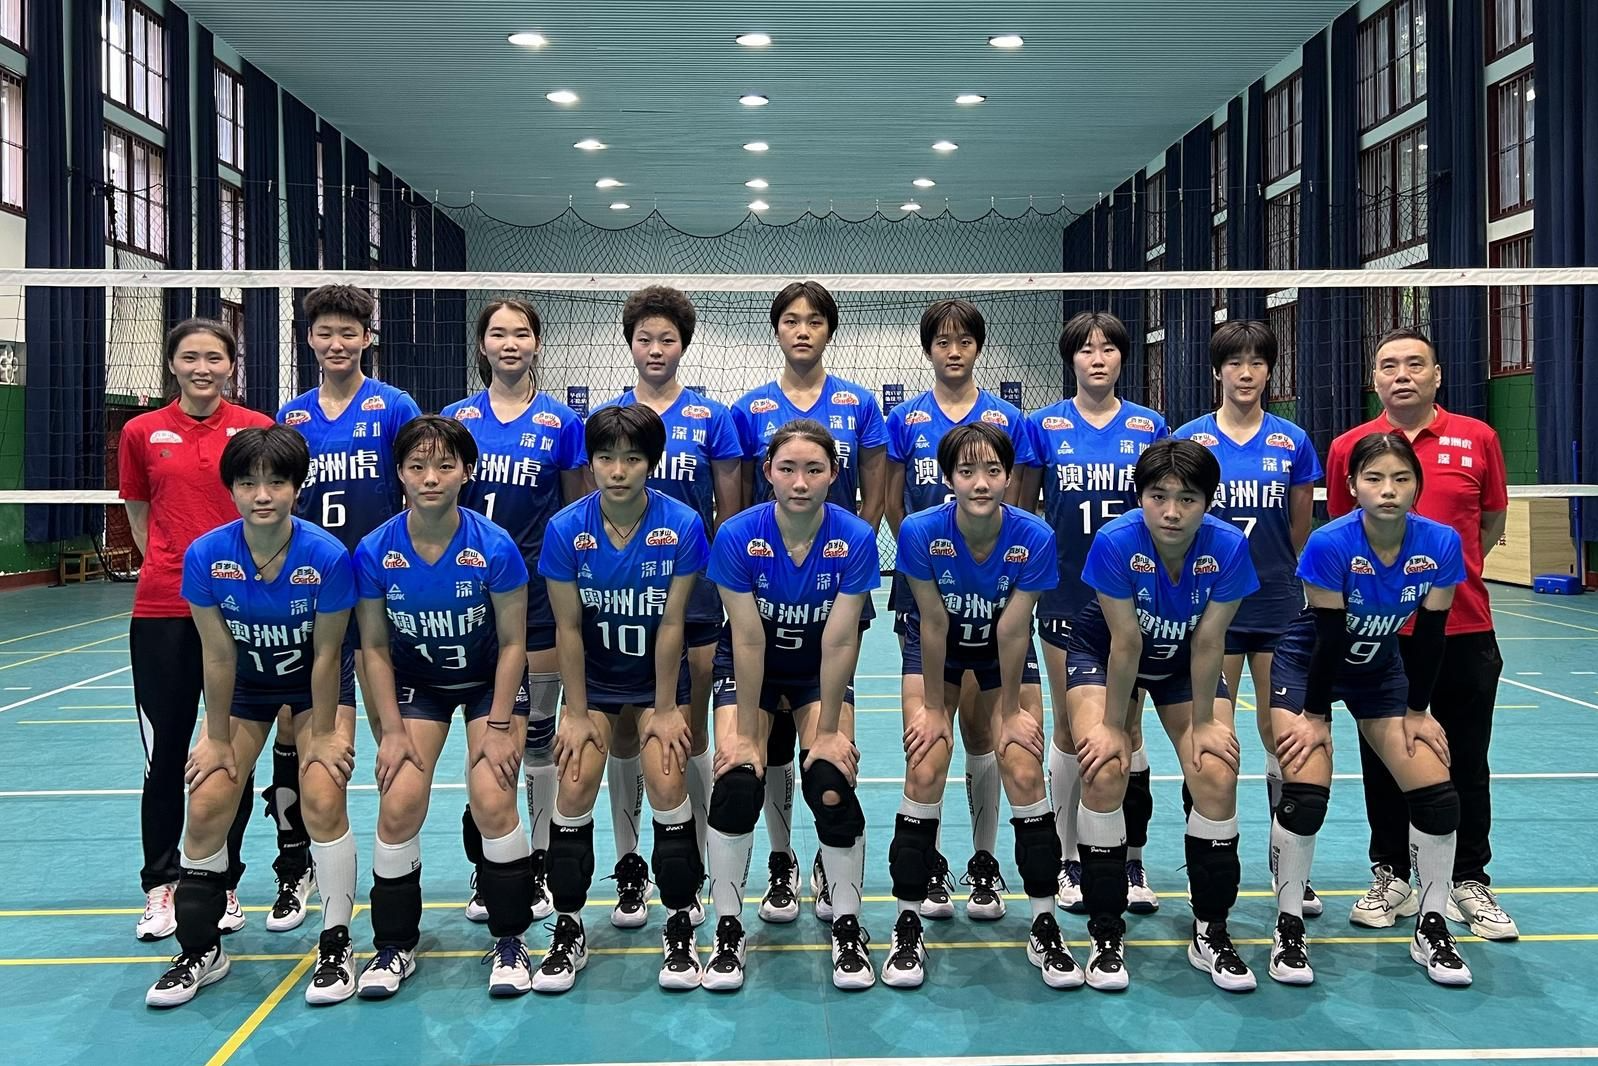 “一起向未来”！深圳中塞女排青年队首次出征全国青年排球精英赛